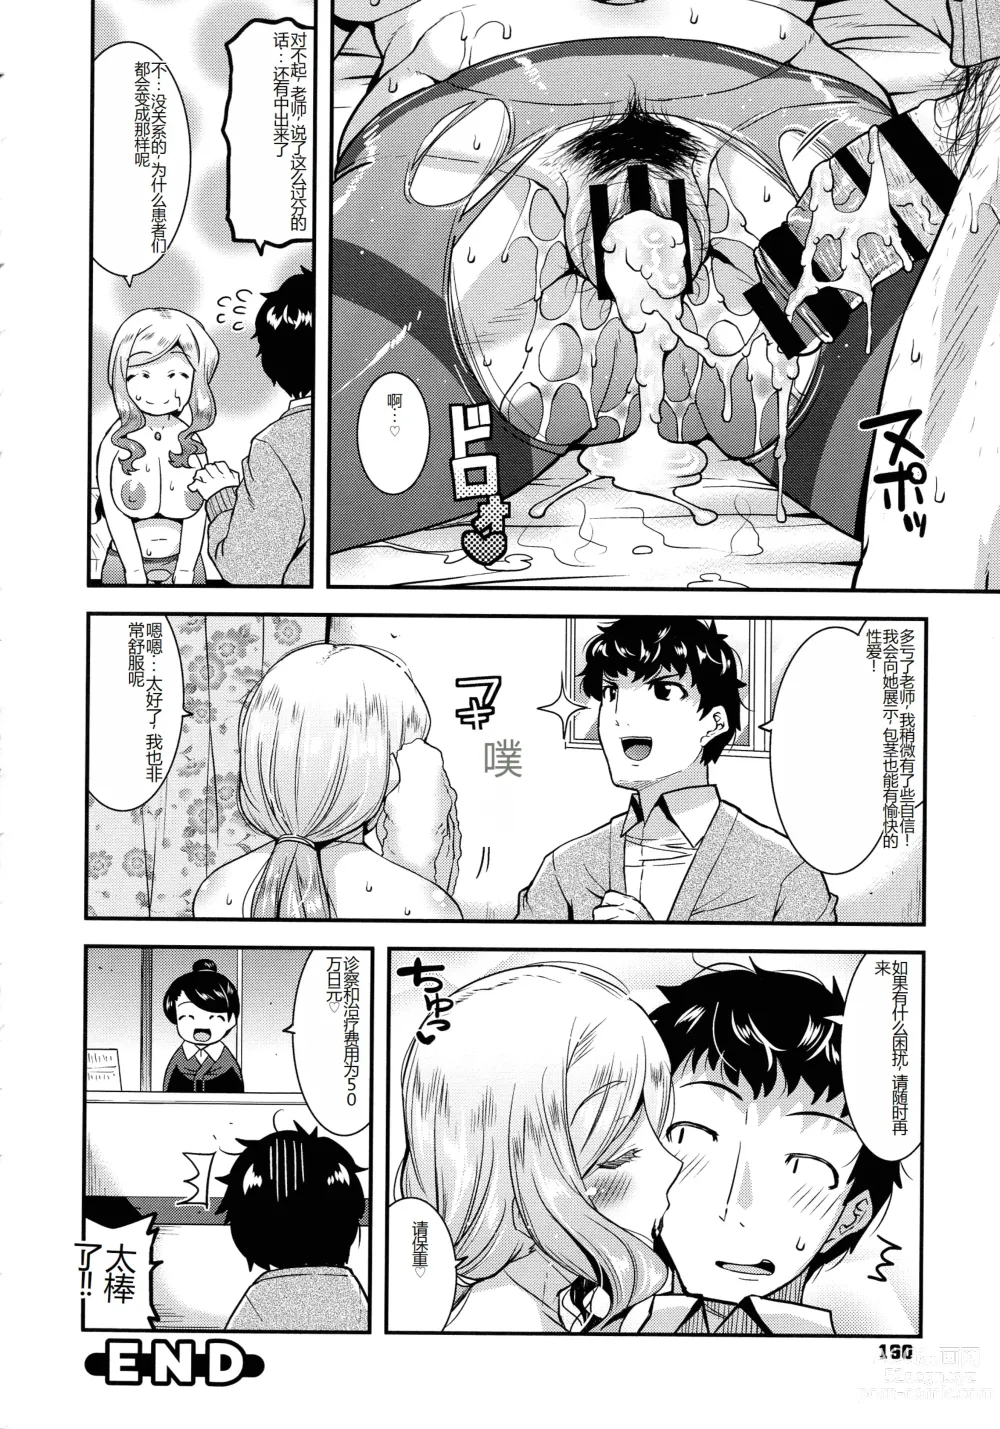 Page 191 of manga Kobibiyori no Midarazuma